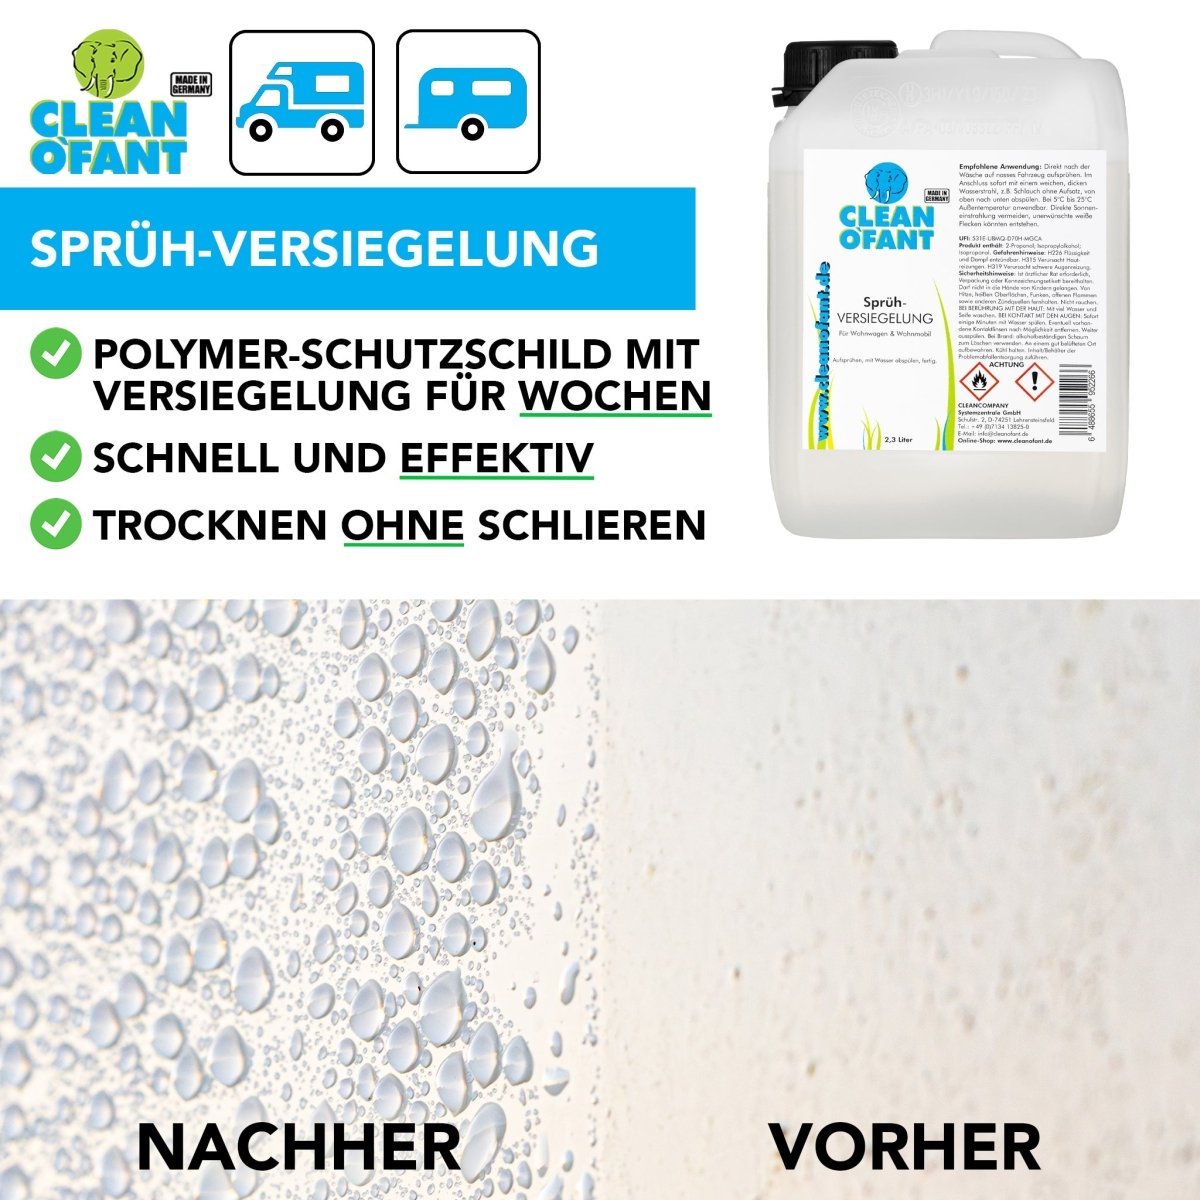 Sprüh-VERSIEGELUNG 2,3 Liter (Wohnwagen / Wohnmobil) + Pumpsprühflasche Profi 1,5 Liter (Drucksprüher) - Düse verstellbar Set - CLEANOFANT